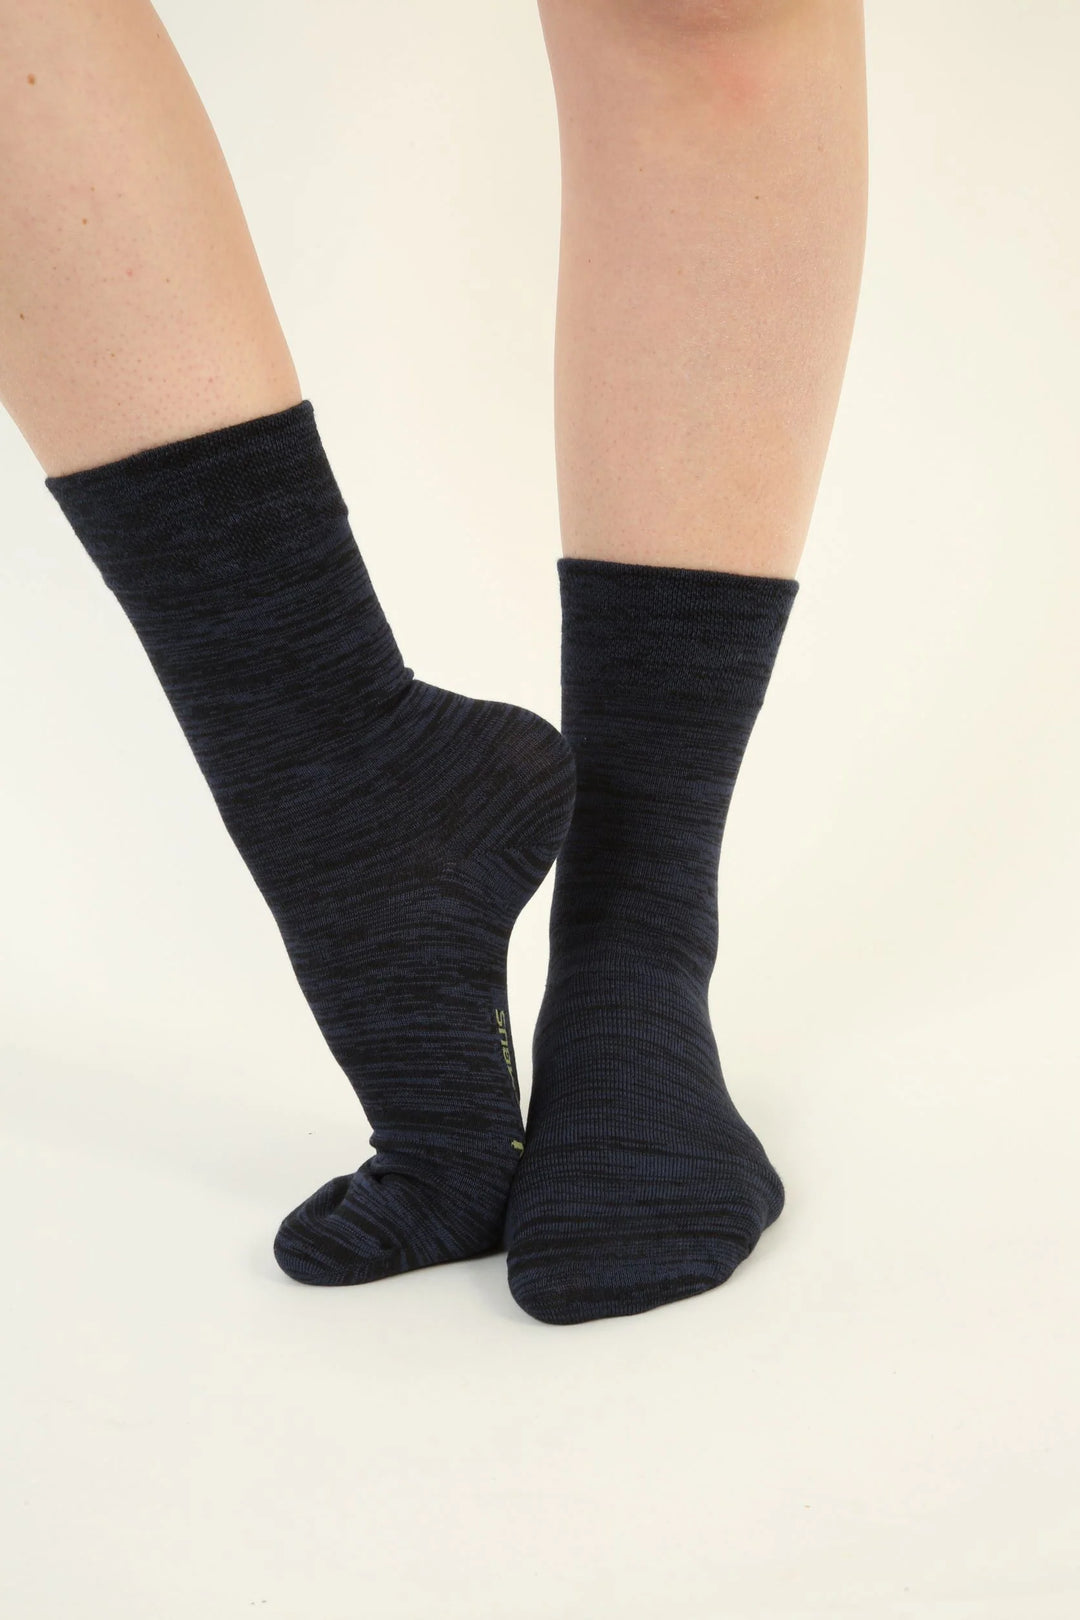 Chaussettes Bambou Bébé Garçon Sans Couture (5 paires) – Kolibri Socks